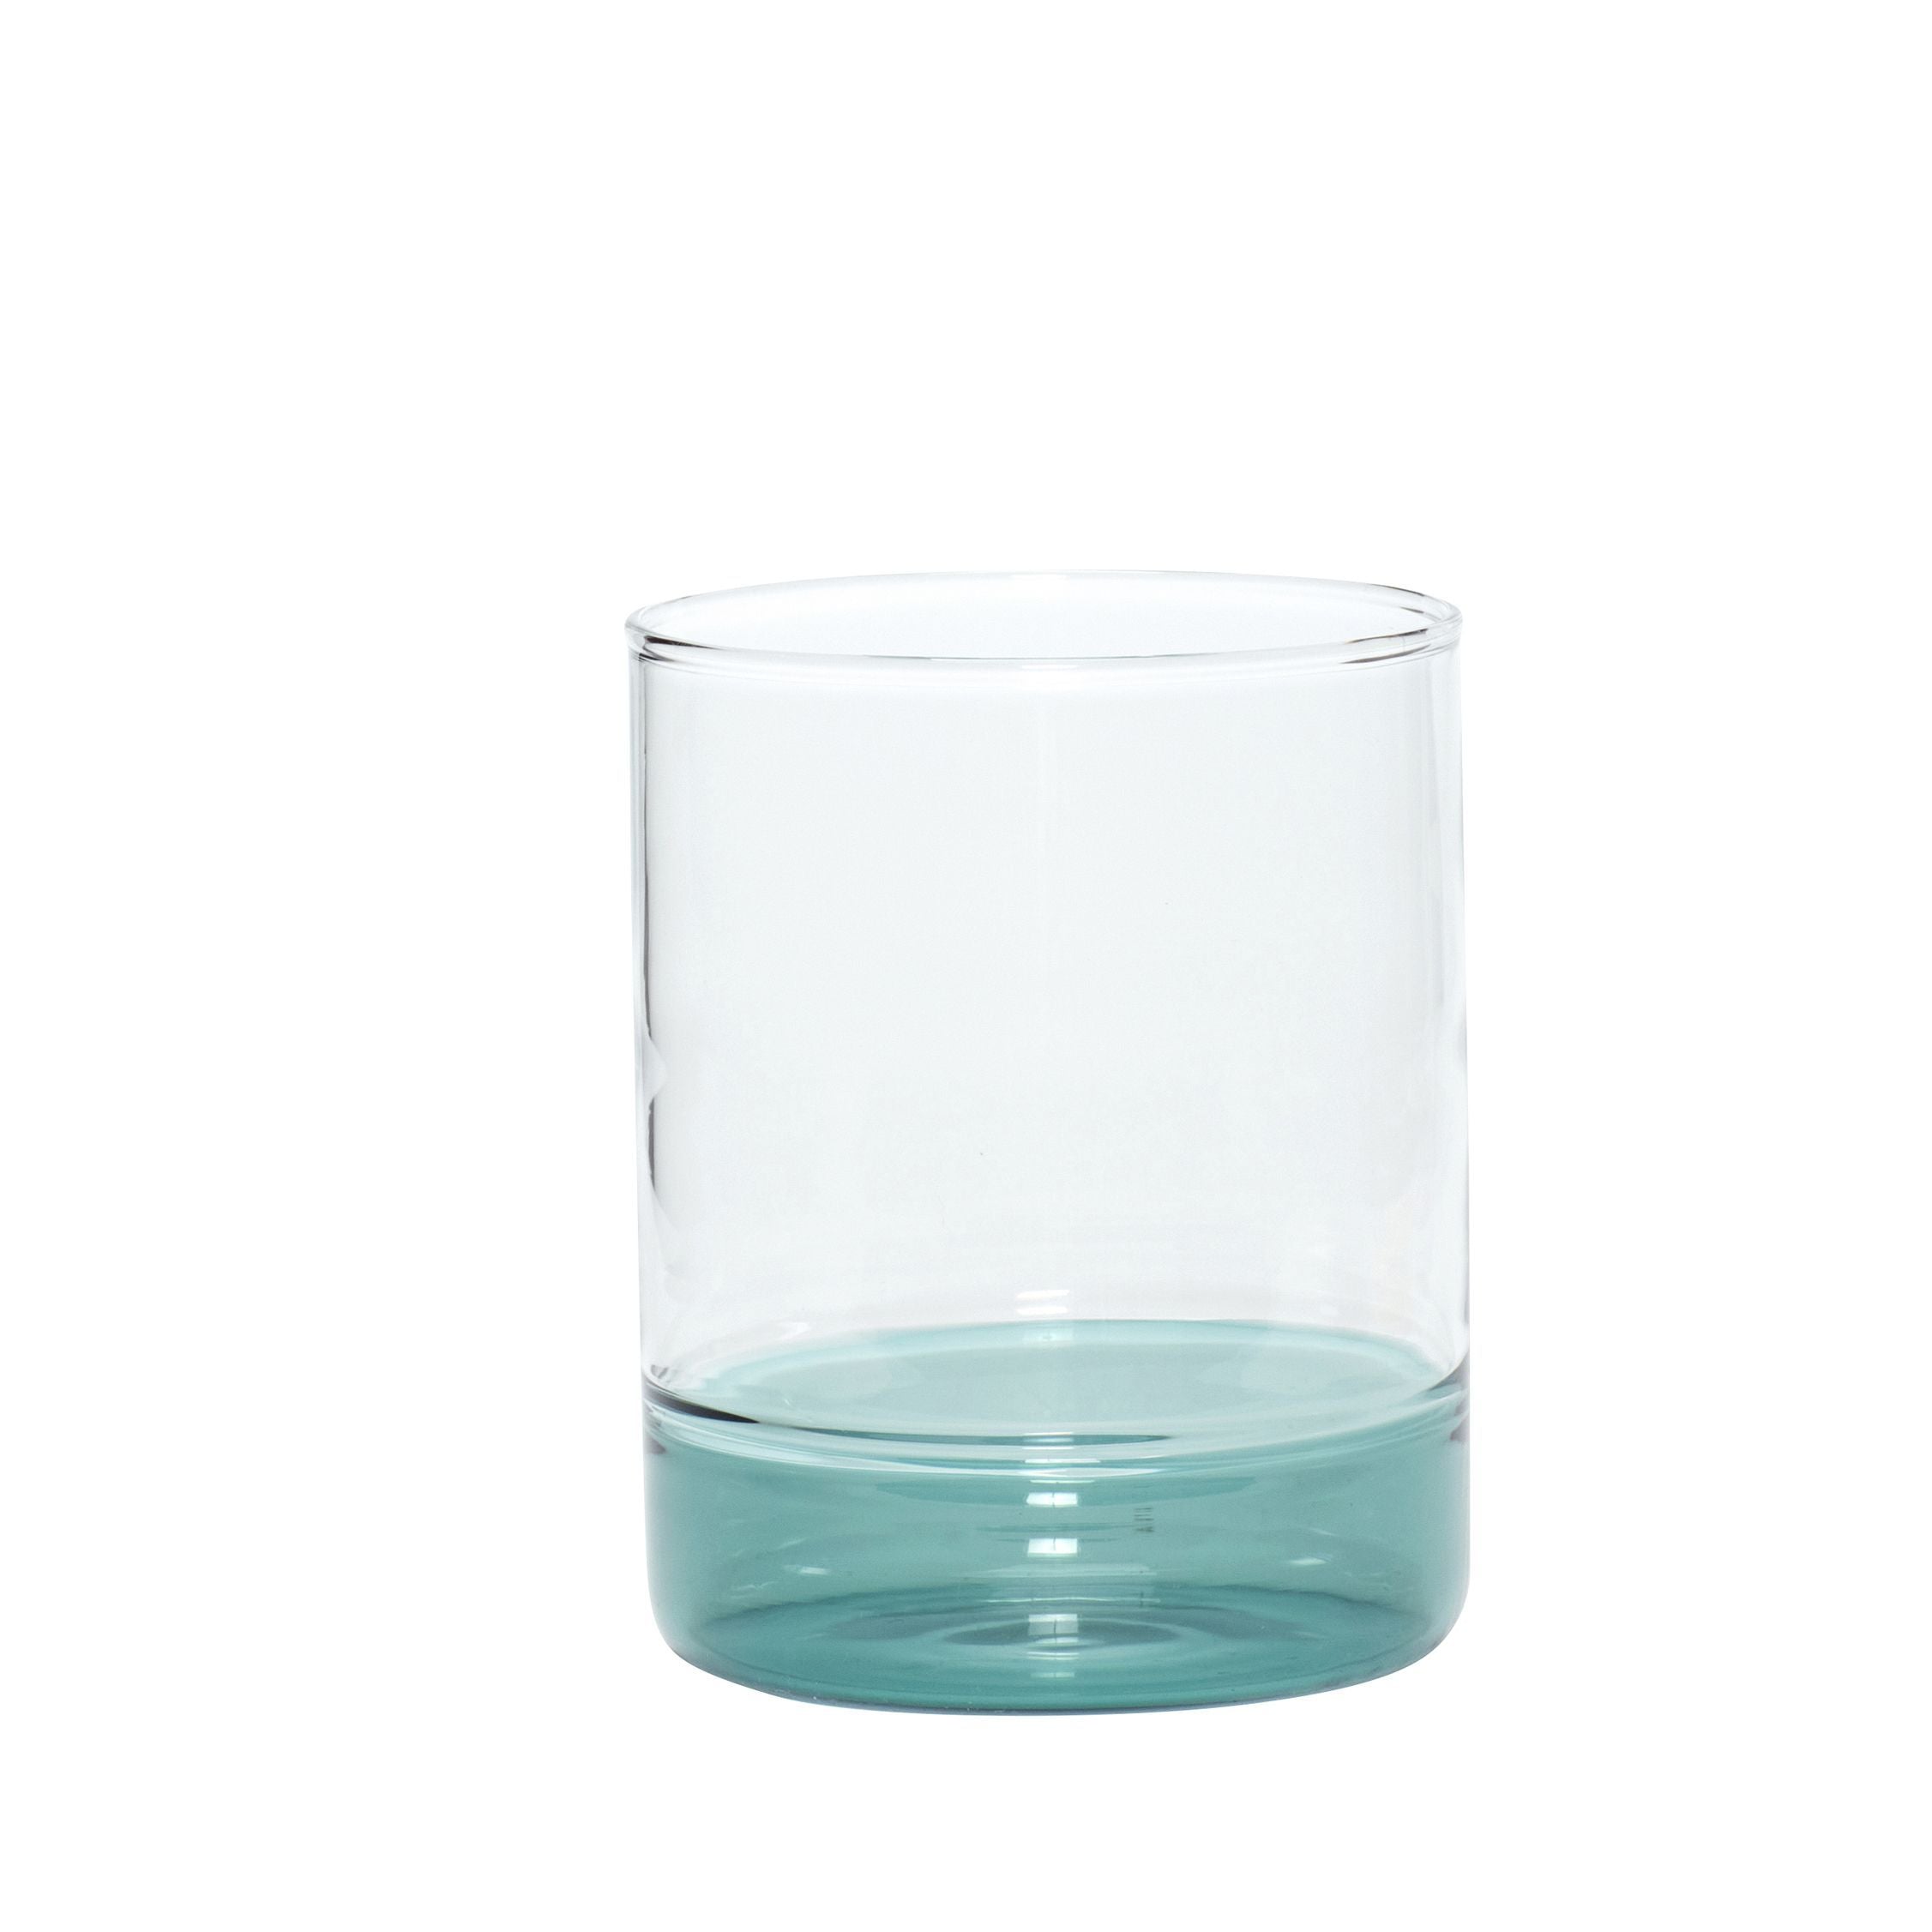 Hübsch Kiosk Drinking Glass Glass Clear/Green